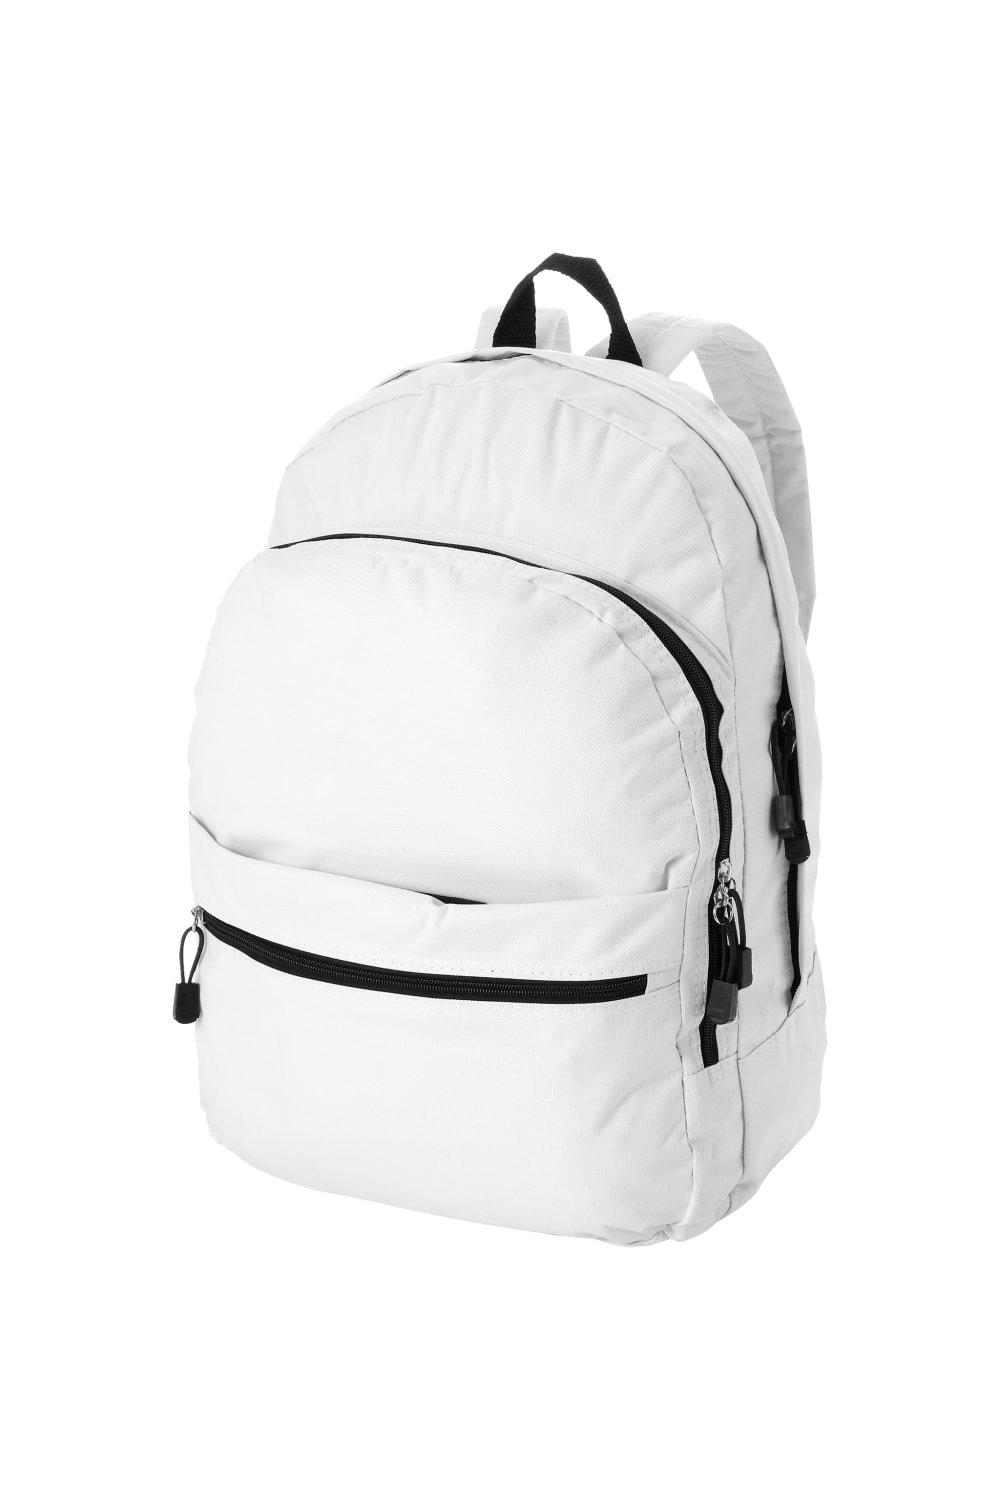 Трендовый рюкзак Bullet, белый рюкзак с карманом единорог